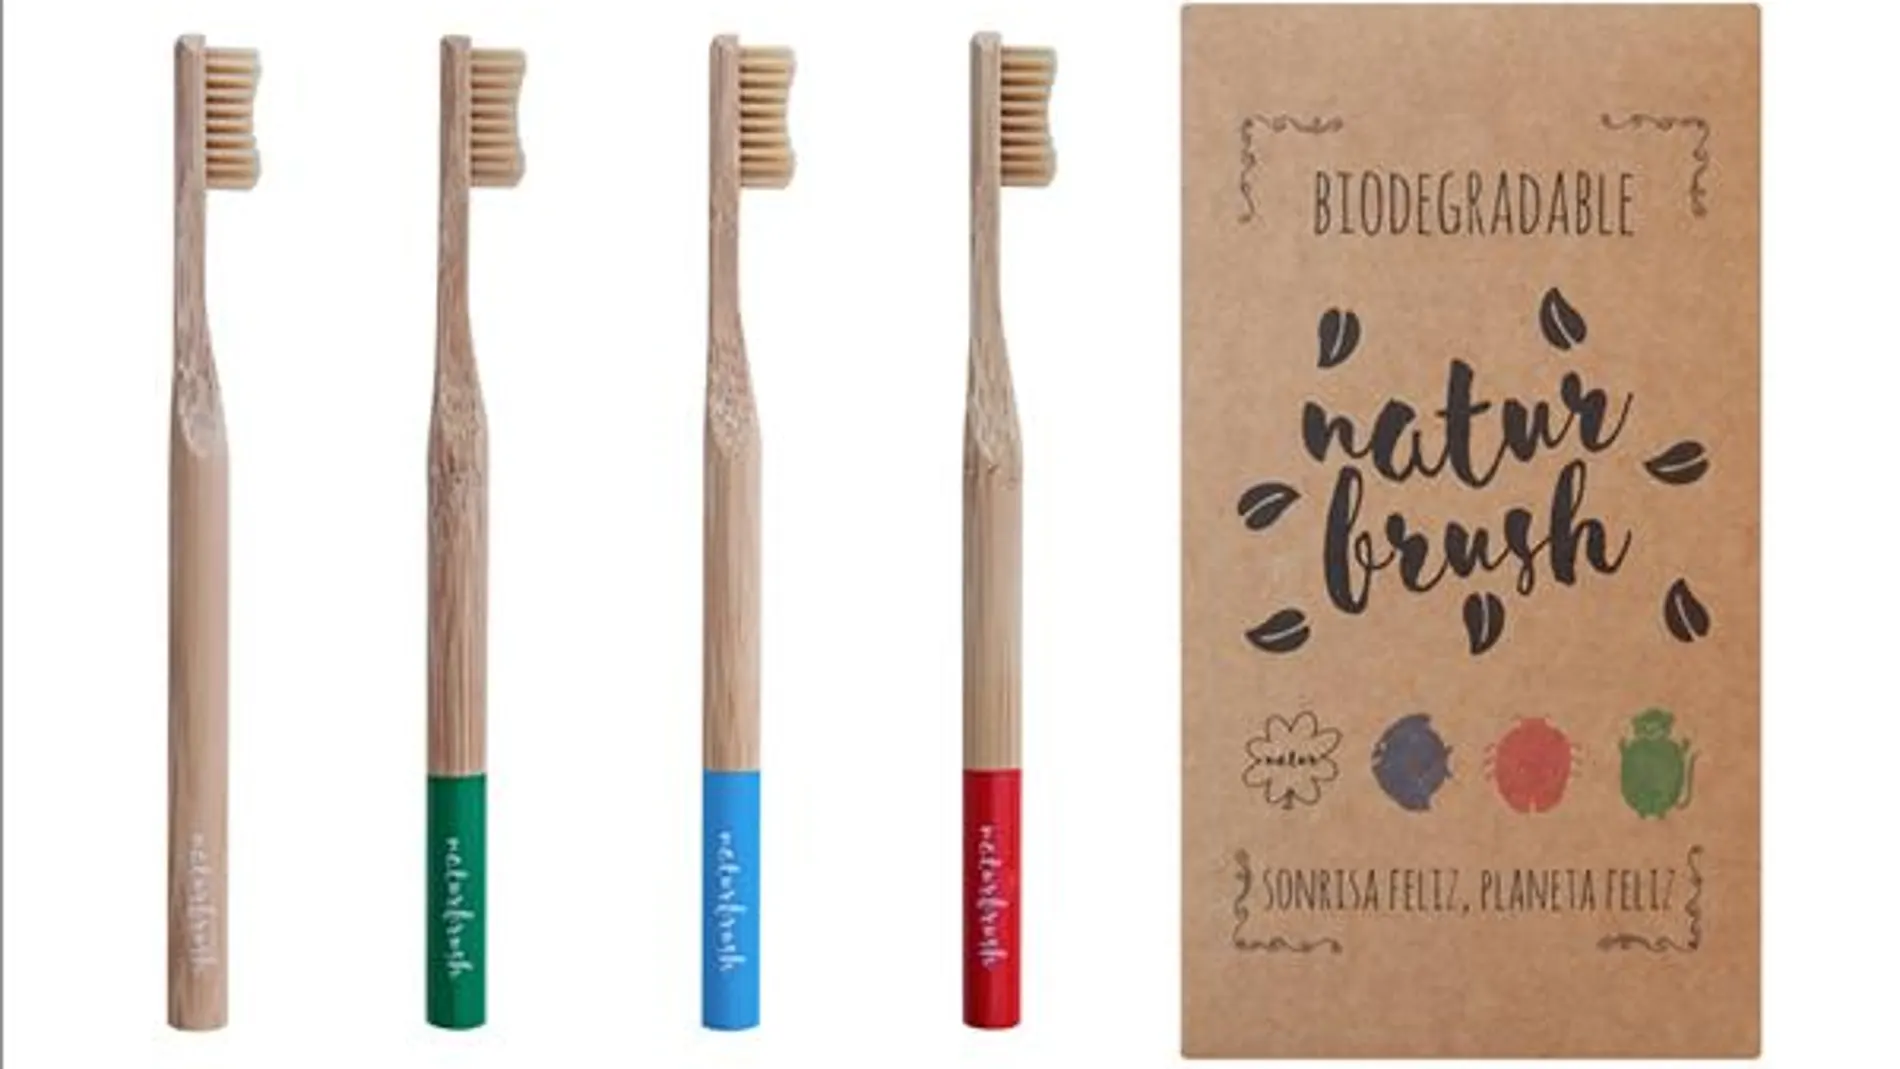 La empresa valenciana ha lanzado al mercado 90.000 cepillos de dientes biodegradables.